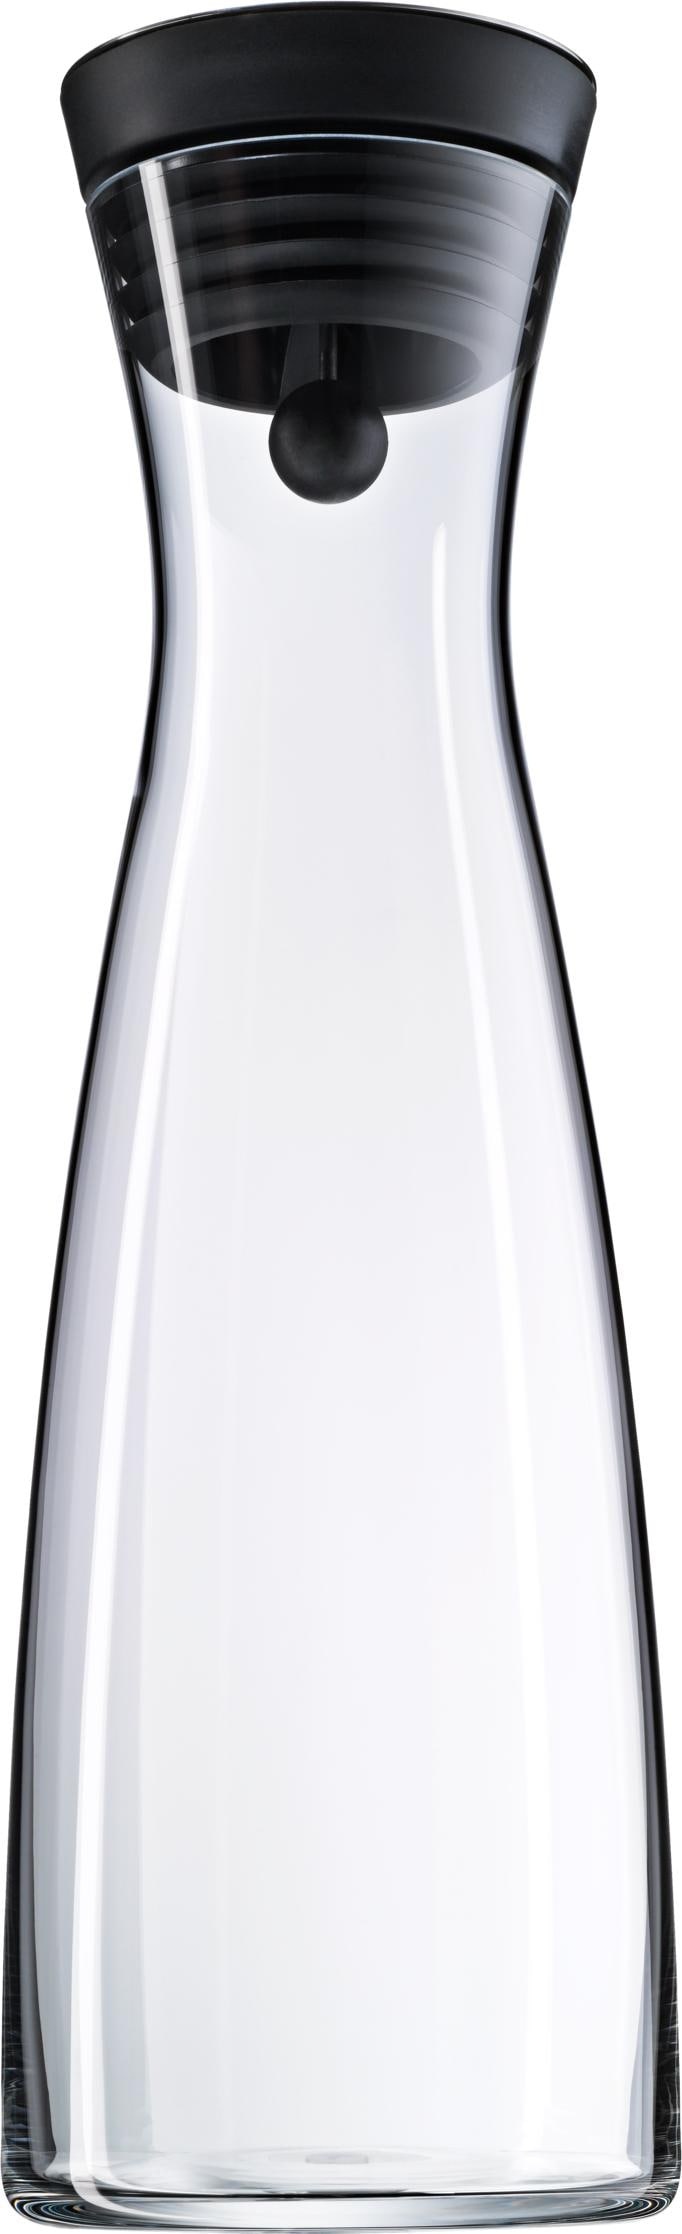 WMF Wasserkaraffe Kippdeckel 1,5l, Serviergefässe, Schwarz, Transparent